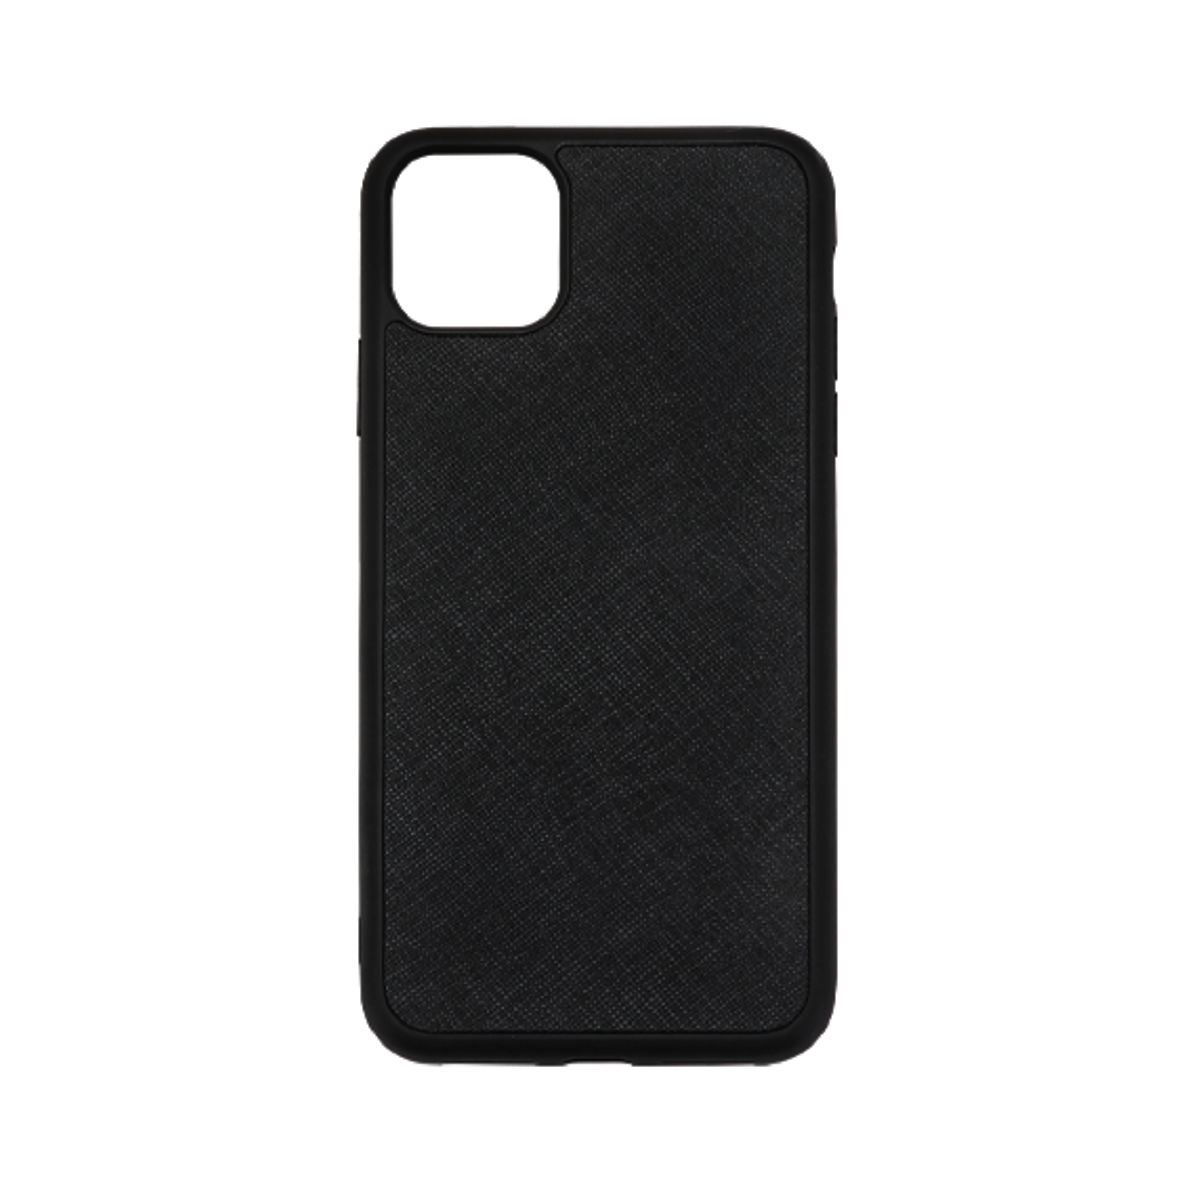 iPhone 11 Pro Max Case - Black